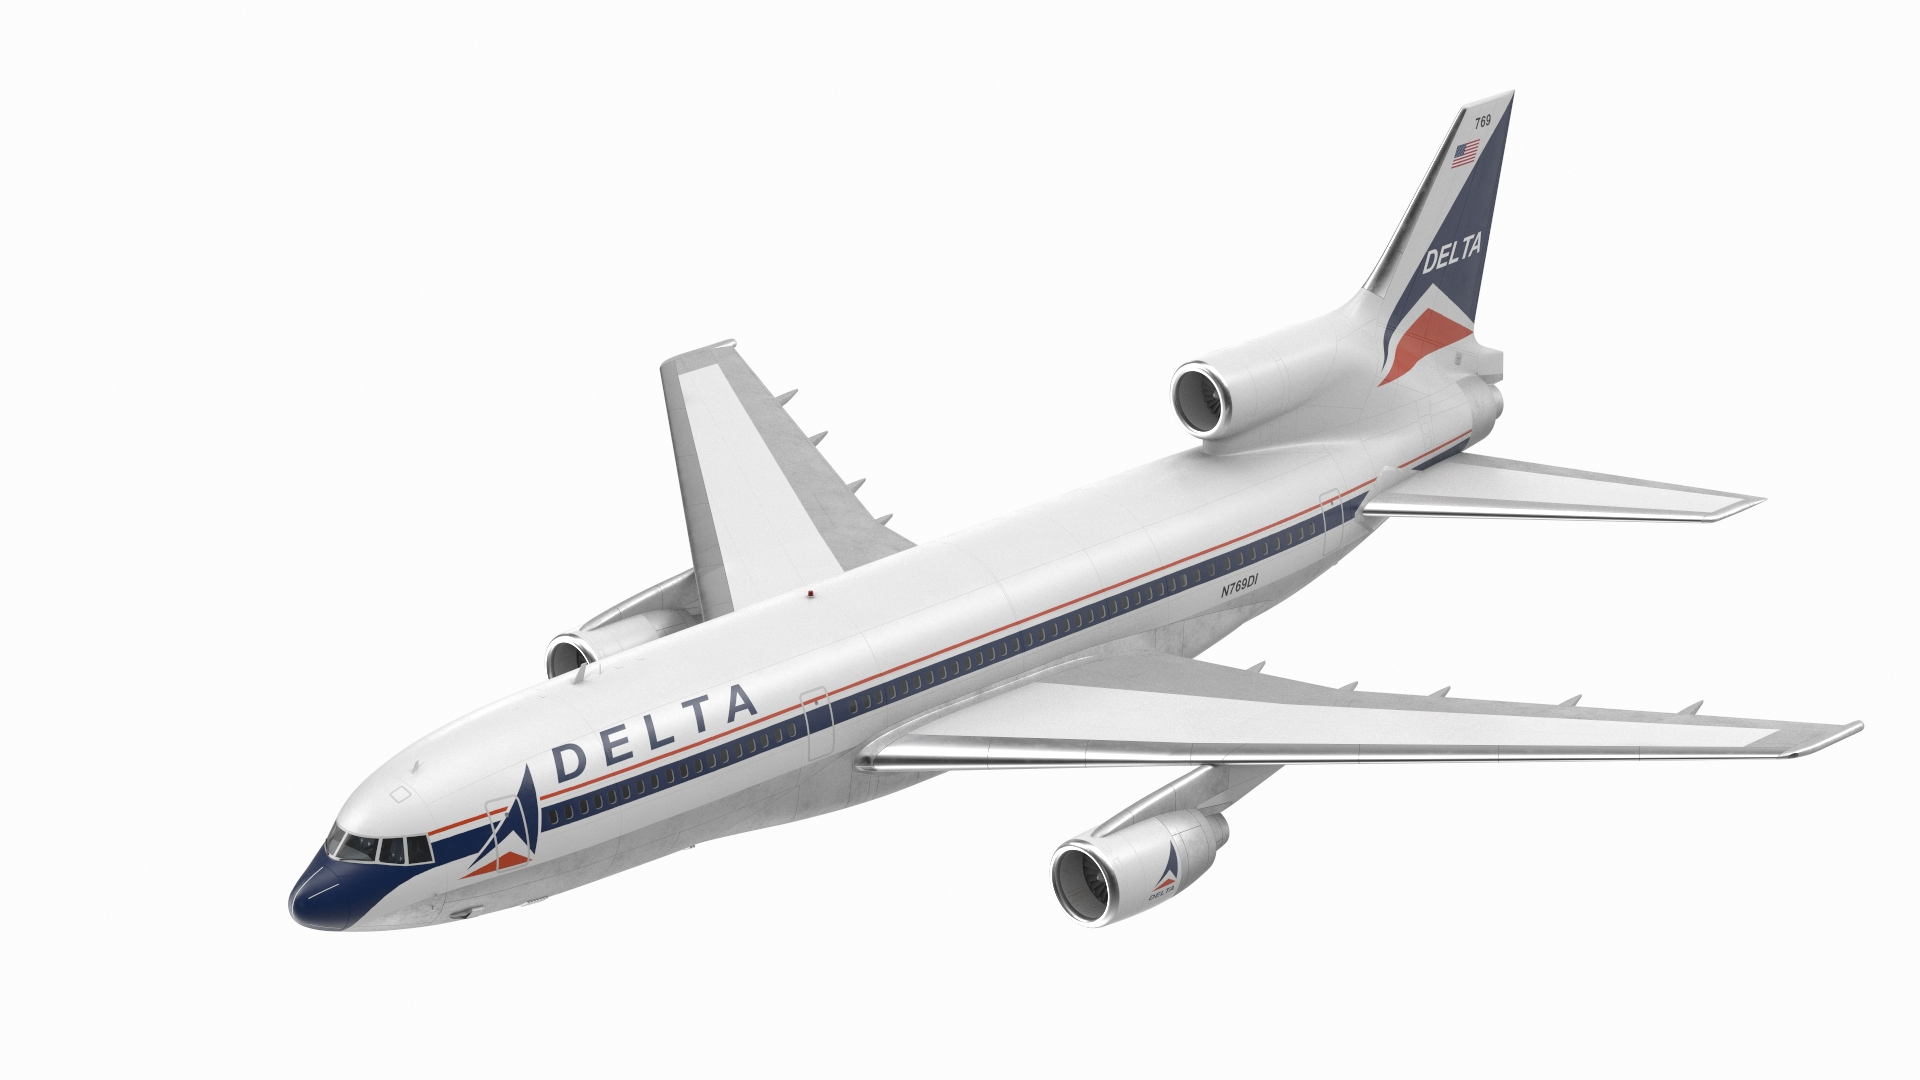 Delta L1011: The Fuel Efficient Wide Ride Fleet - MotoArt PlaneTags